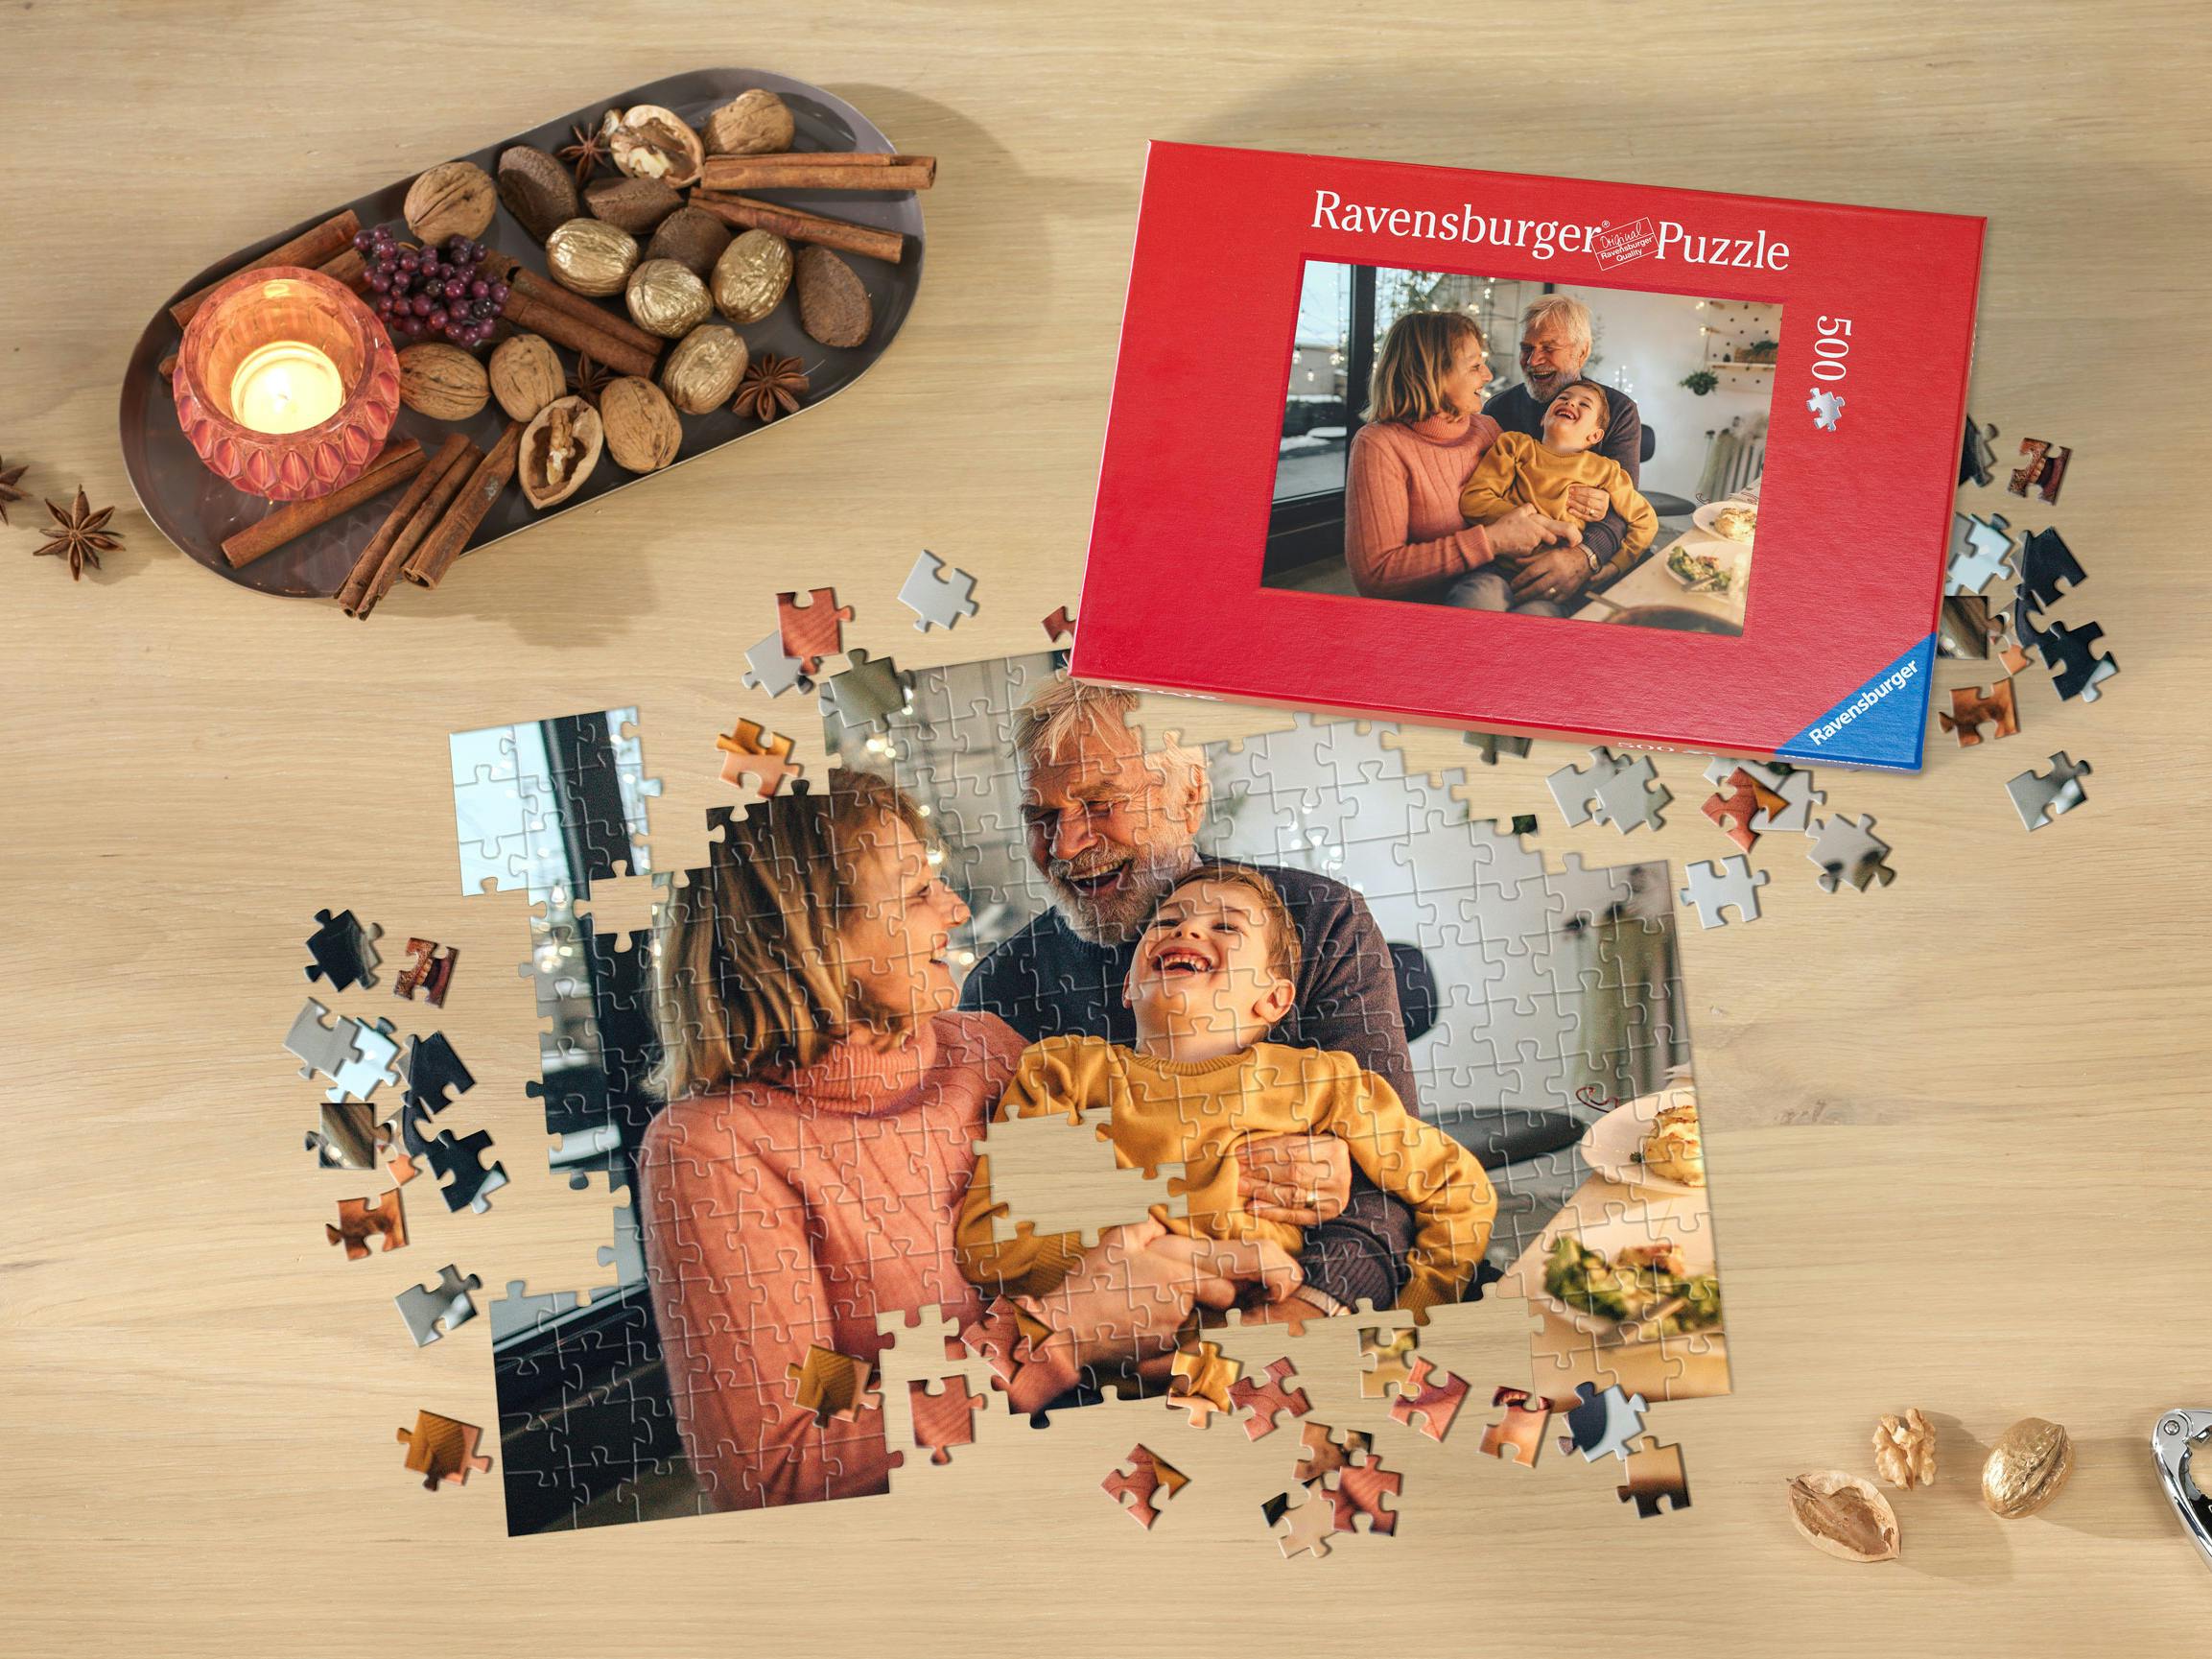 Ravensburger Fotopuzzle mit einem Familienfoto im weihnachtlichen Ambiente